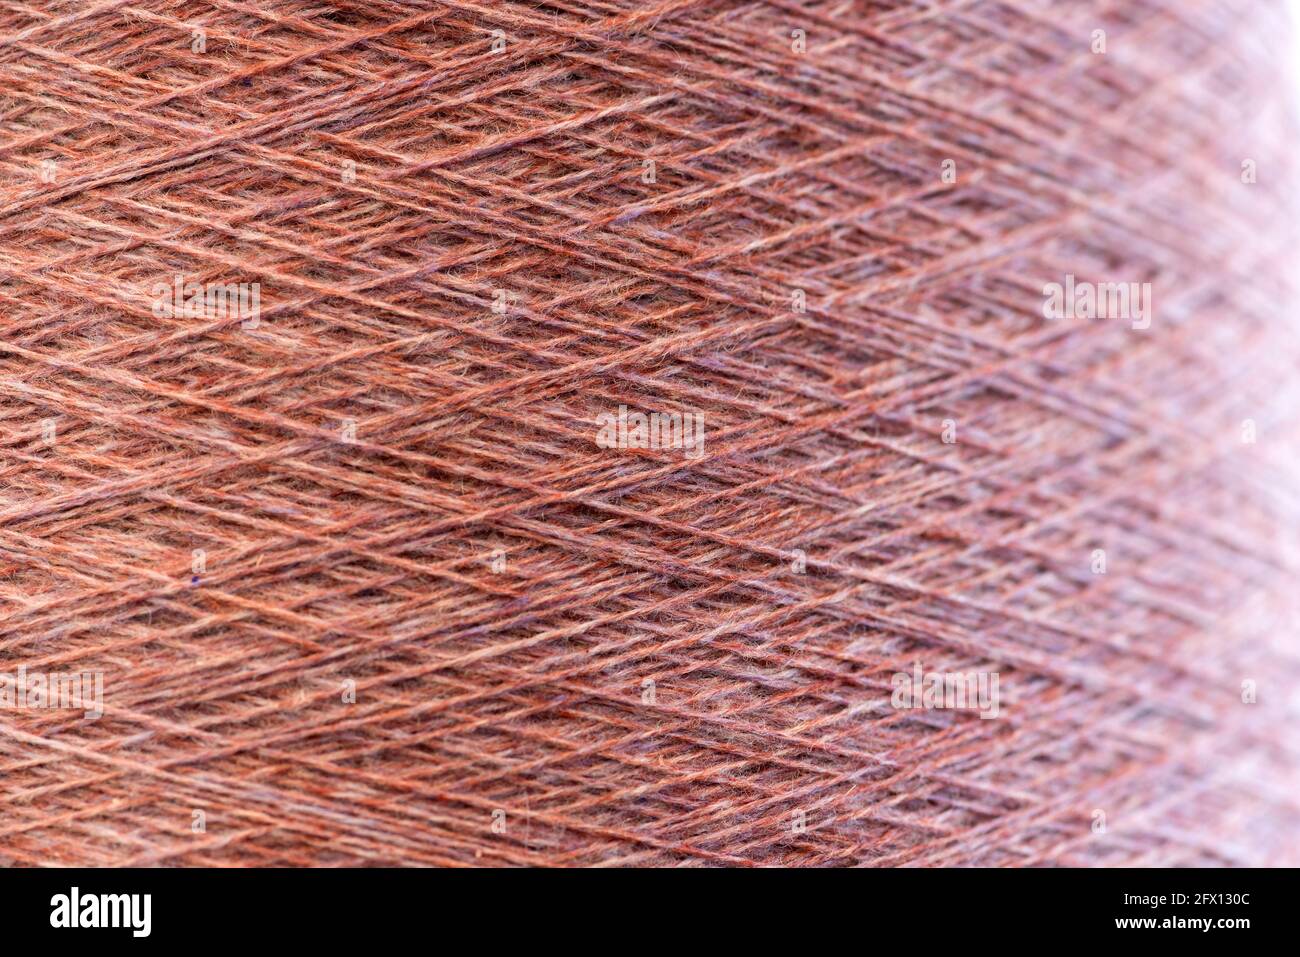 Nahaufnahme Hintergrundstruktur aus rosa Kaschmirgarn auf einer Spule Oder Rolle, die die natürlichen gesponnenen Fasern in einer Strickmode zeigt Und Modekonzept Stockfoto